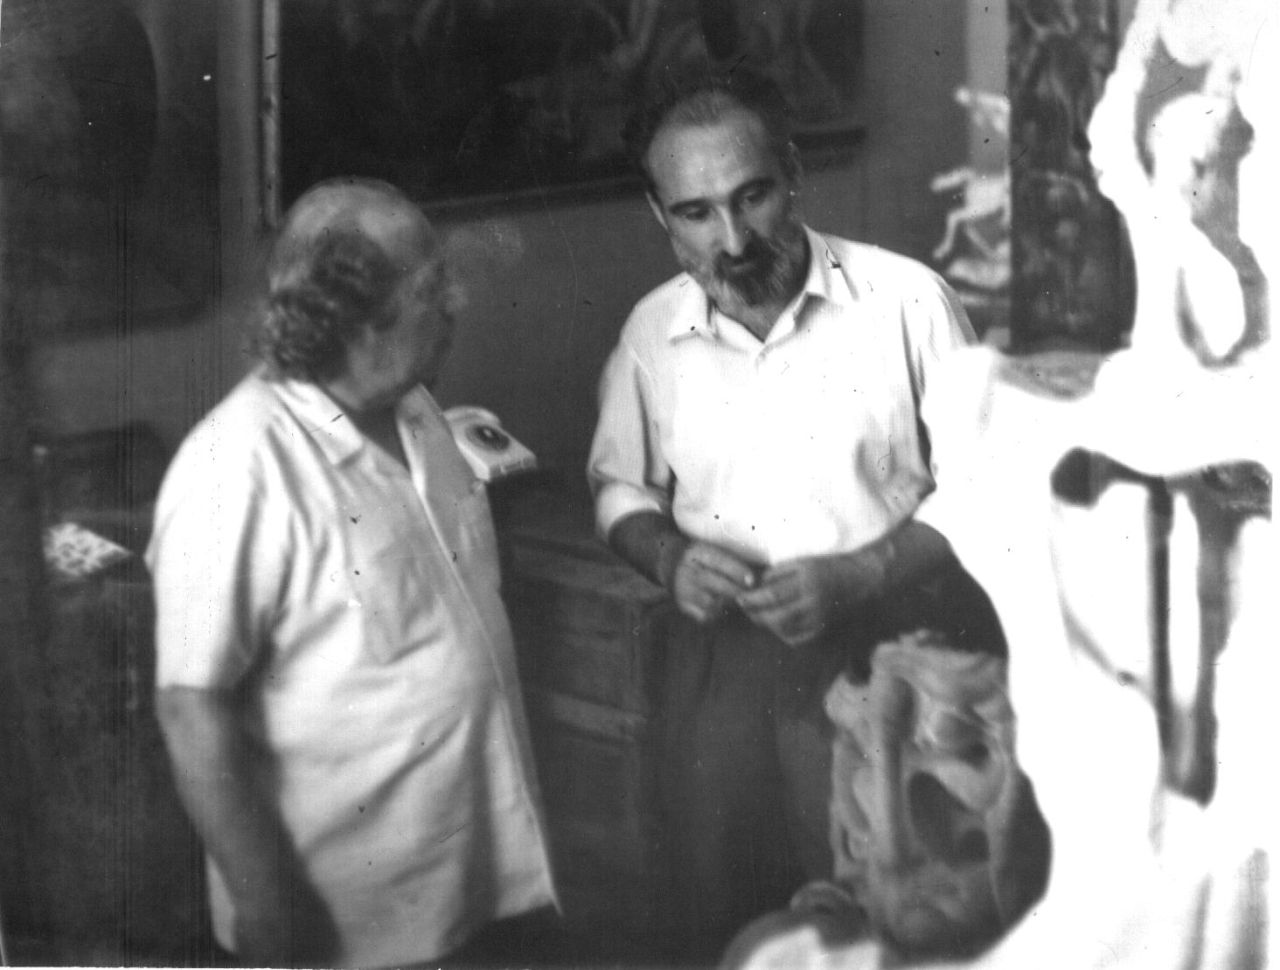  Երվանդ Քոչարը և Ալեքսանդր Գրիգորյանը  արվեստանոցում, Երևան, [1960-ականներ]